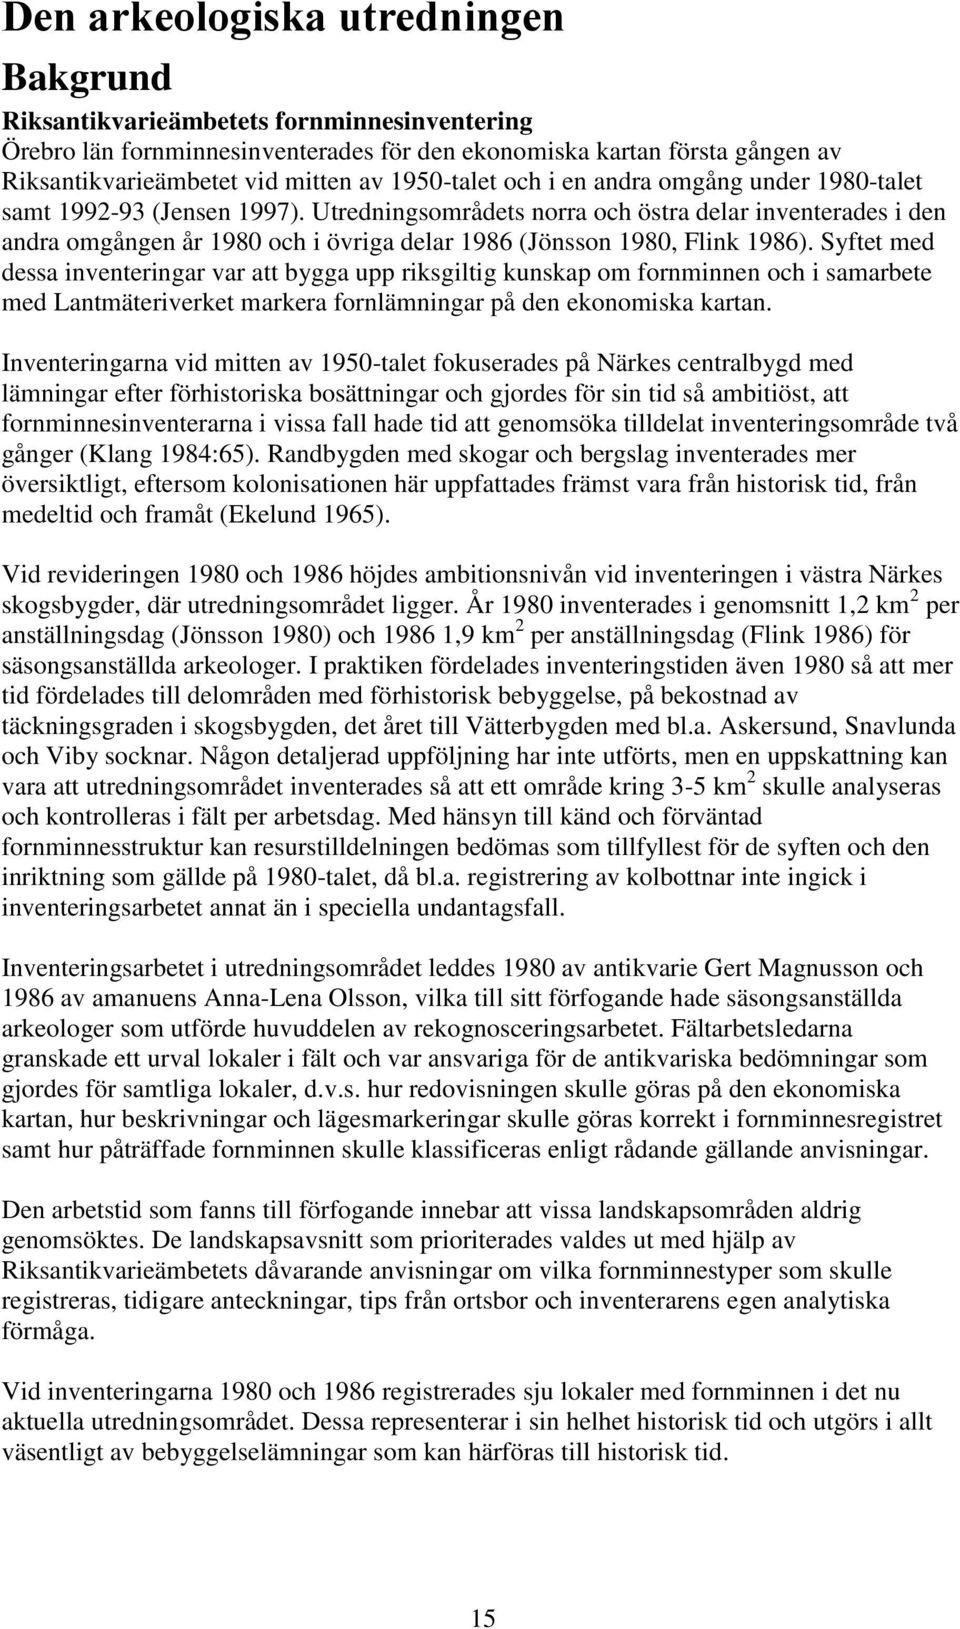 Utredningsområdets norra och östra delar inventerades i den andra omgången år 1980 och i övriga delar 1986 (Jönsson 1980, Flink 1986).